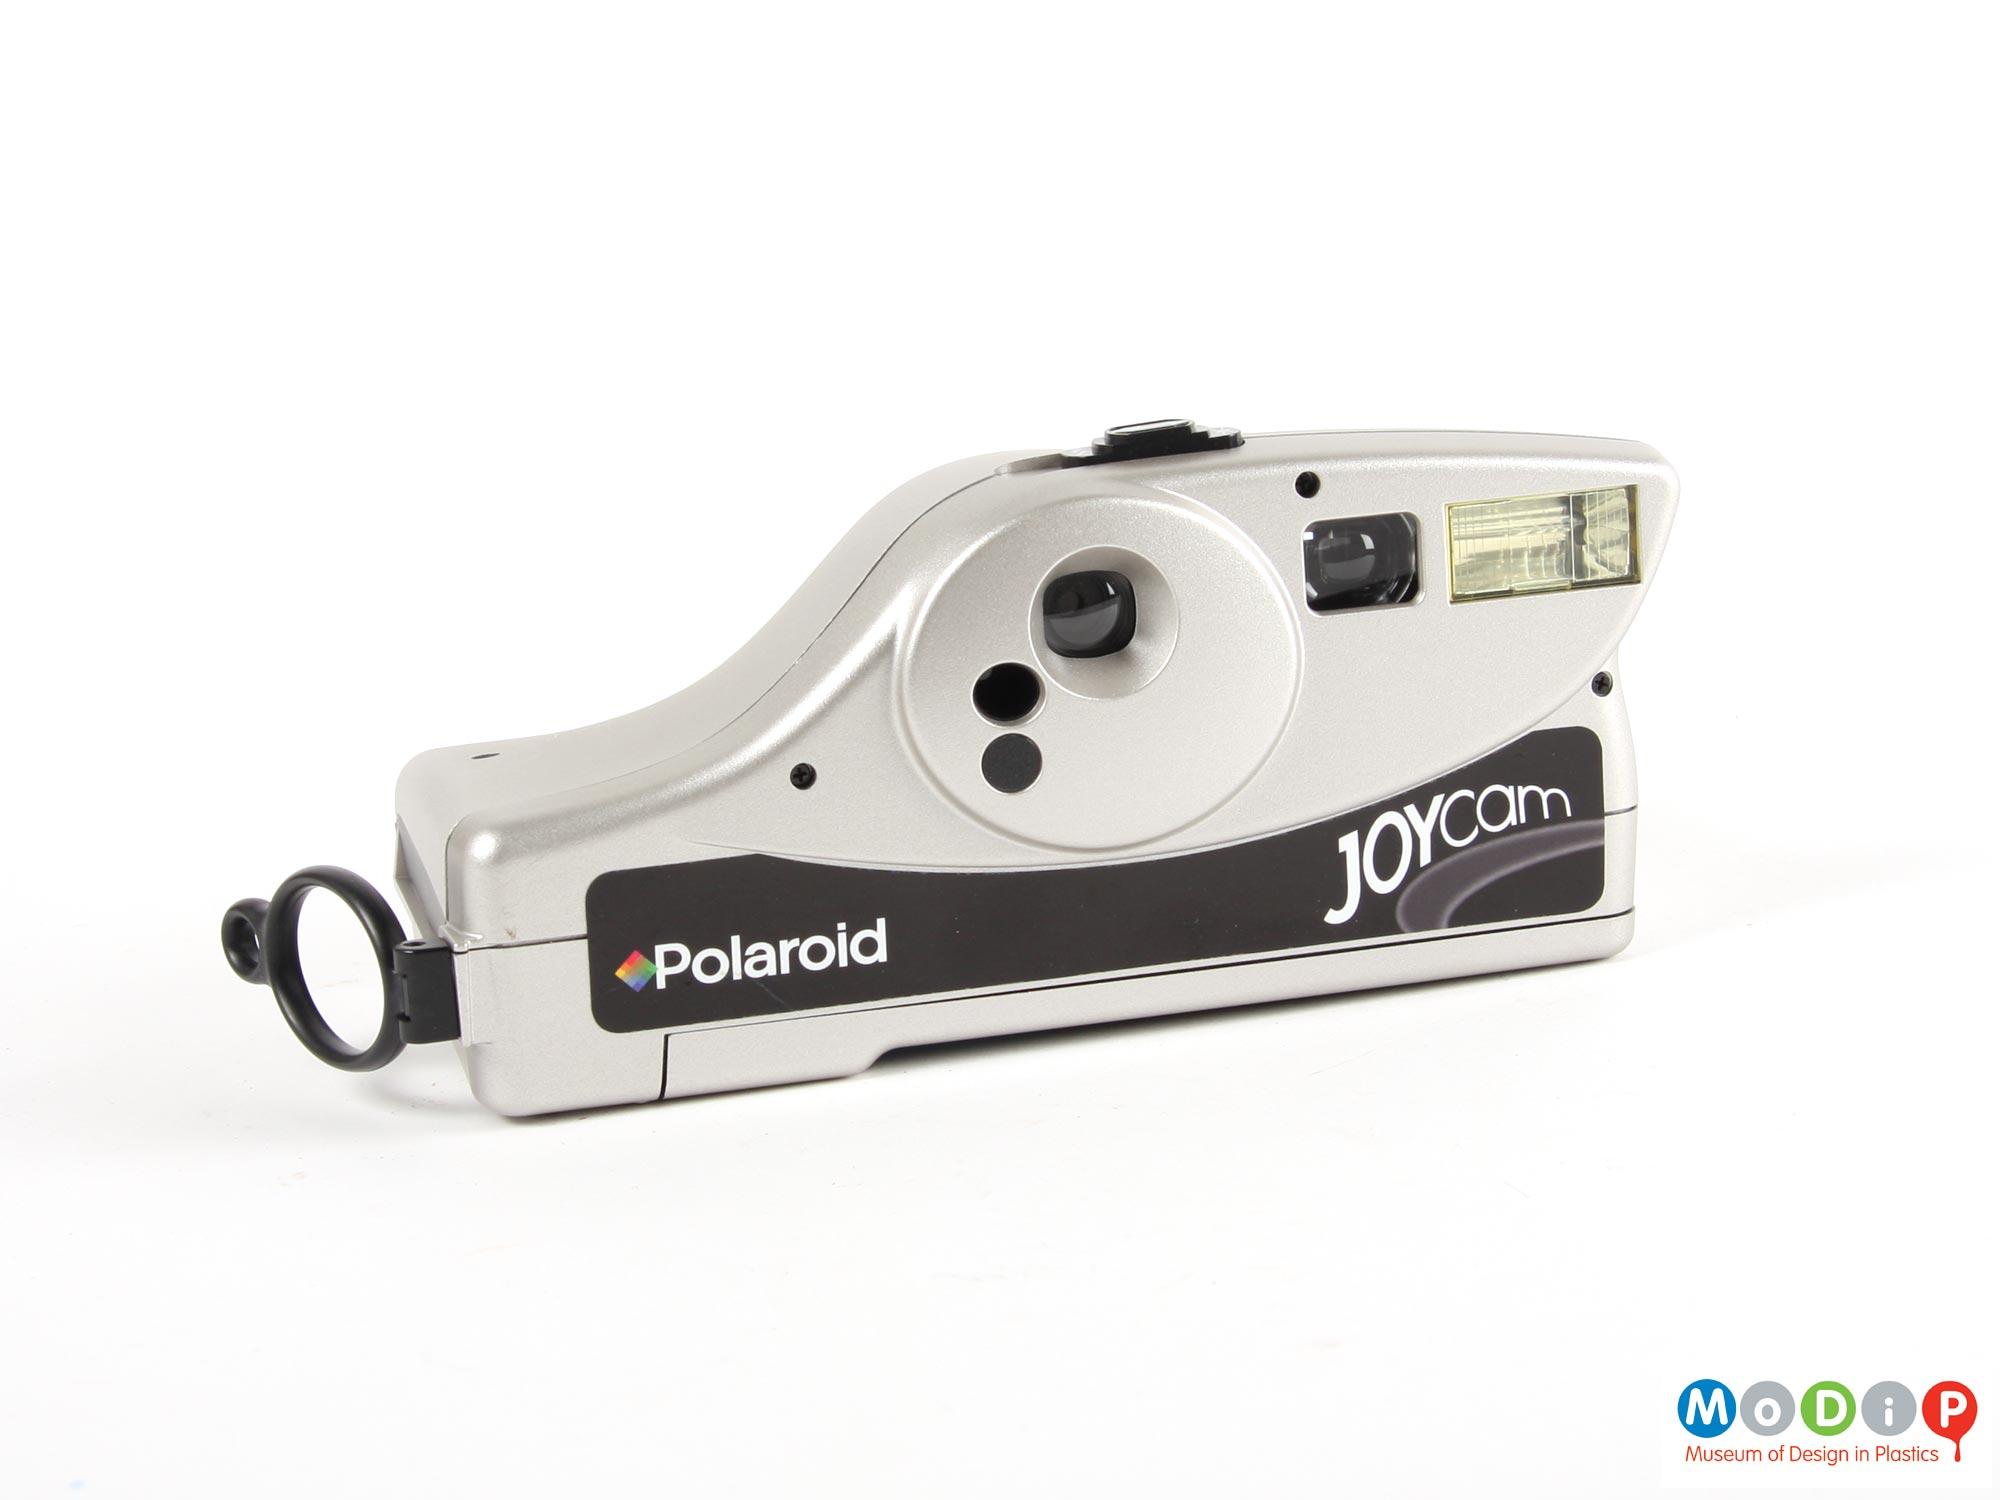 Polaroid Joycam | Museum of Design in Plastics